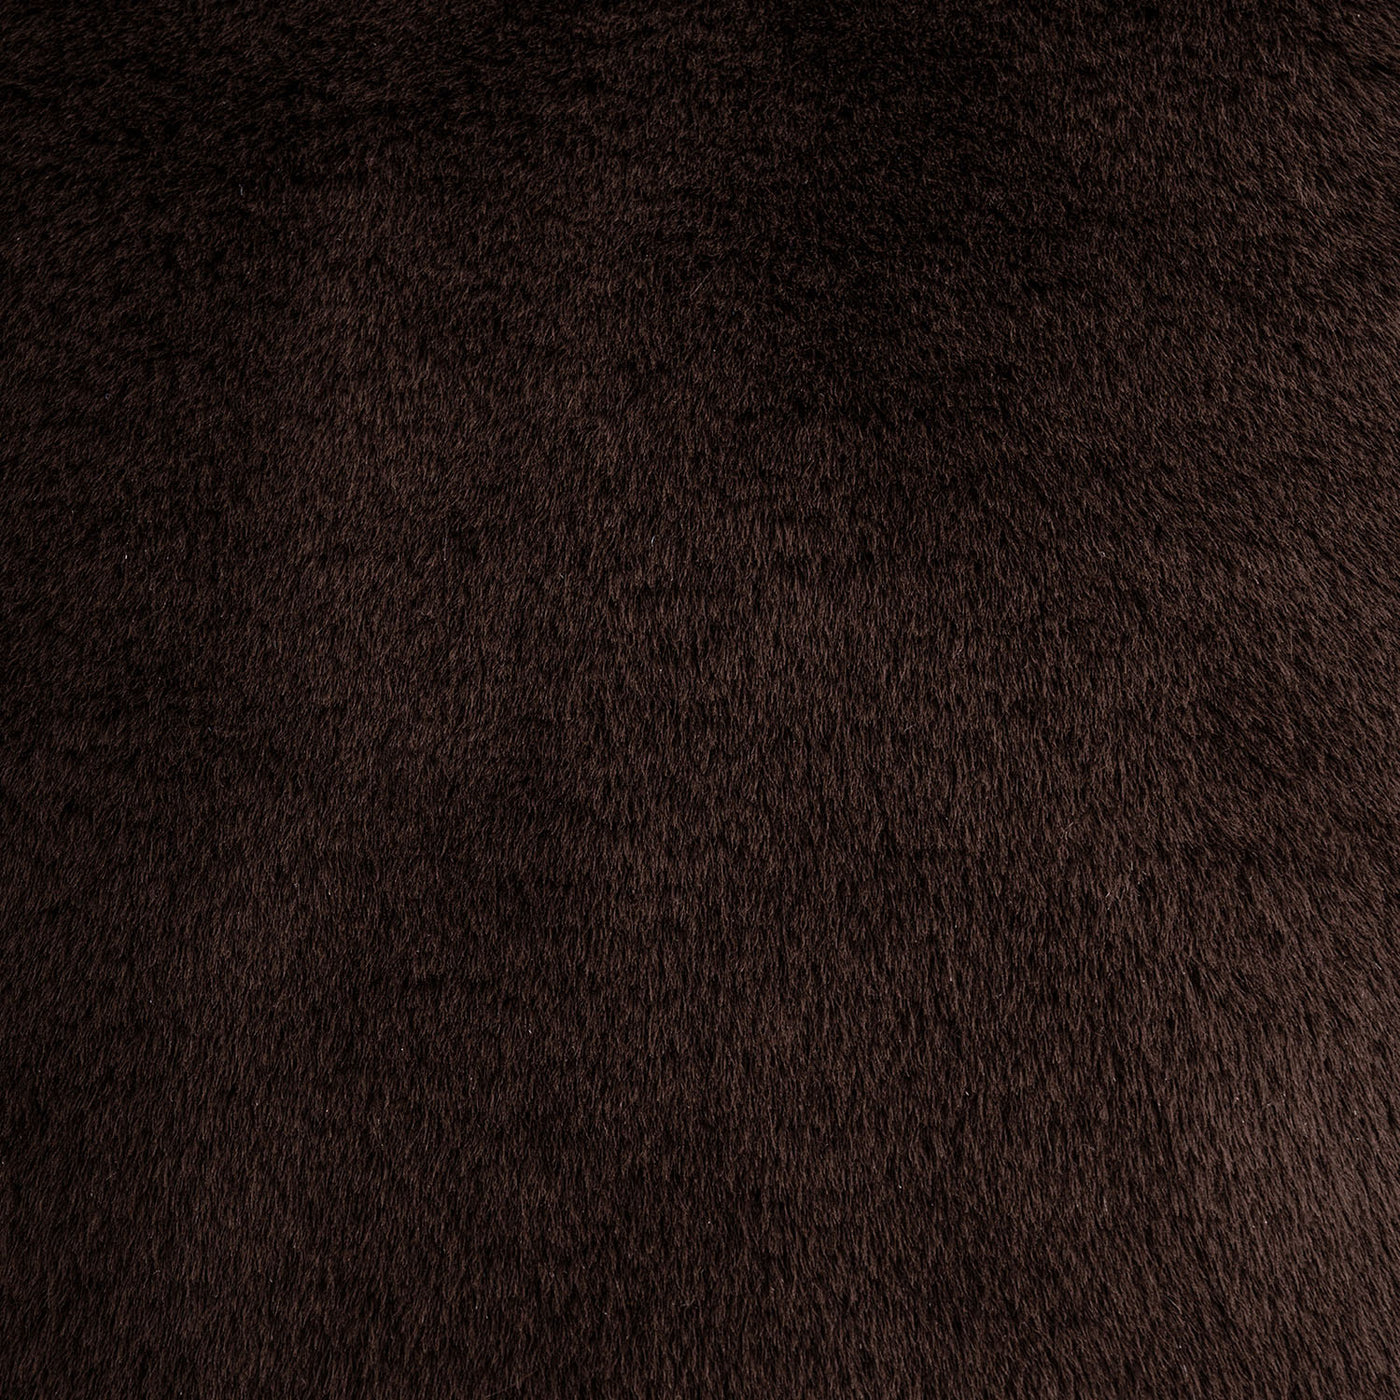 Produktbild braunes Hundekissen aus Webpelz und italienischem Samt. Very Close-up view des Faux Furs.